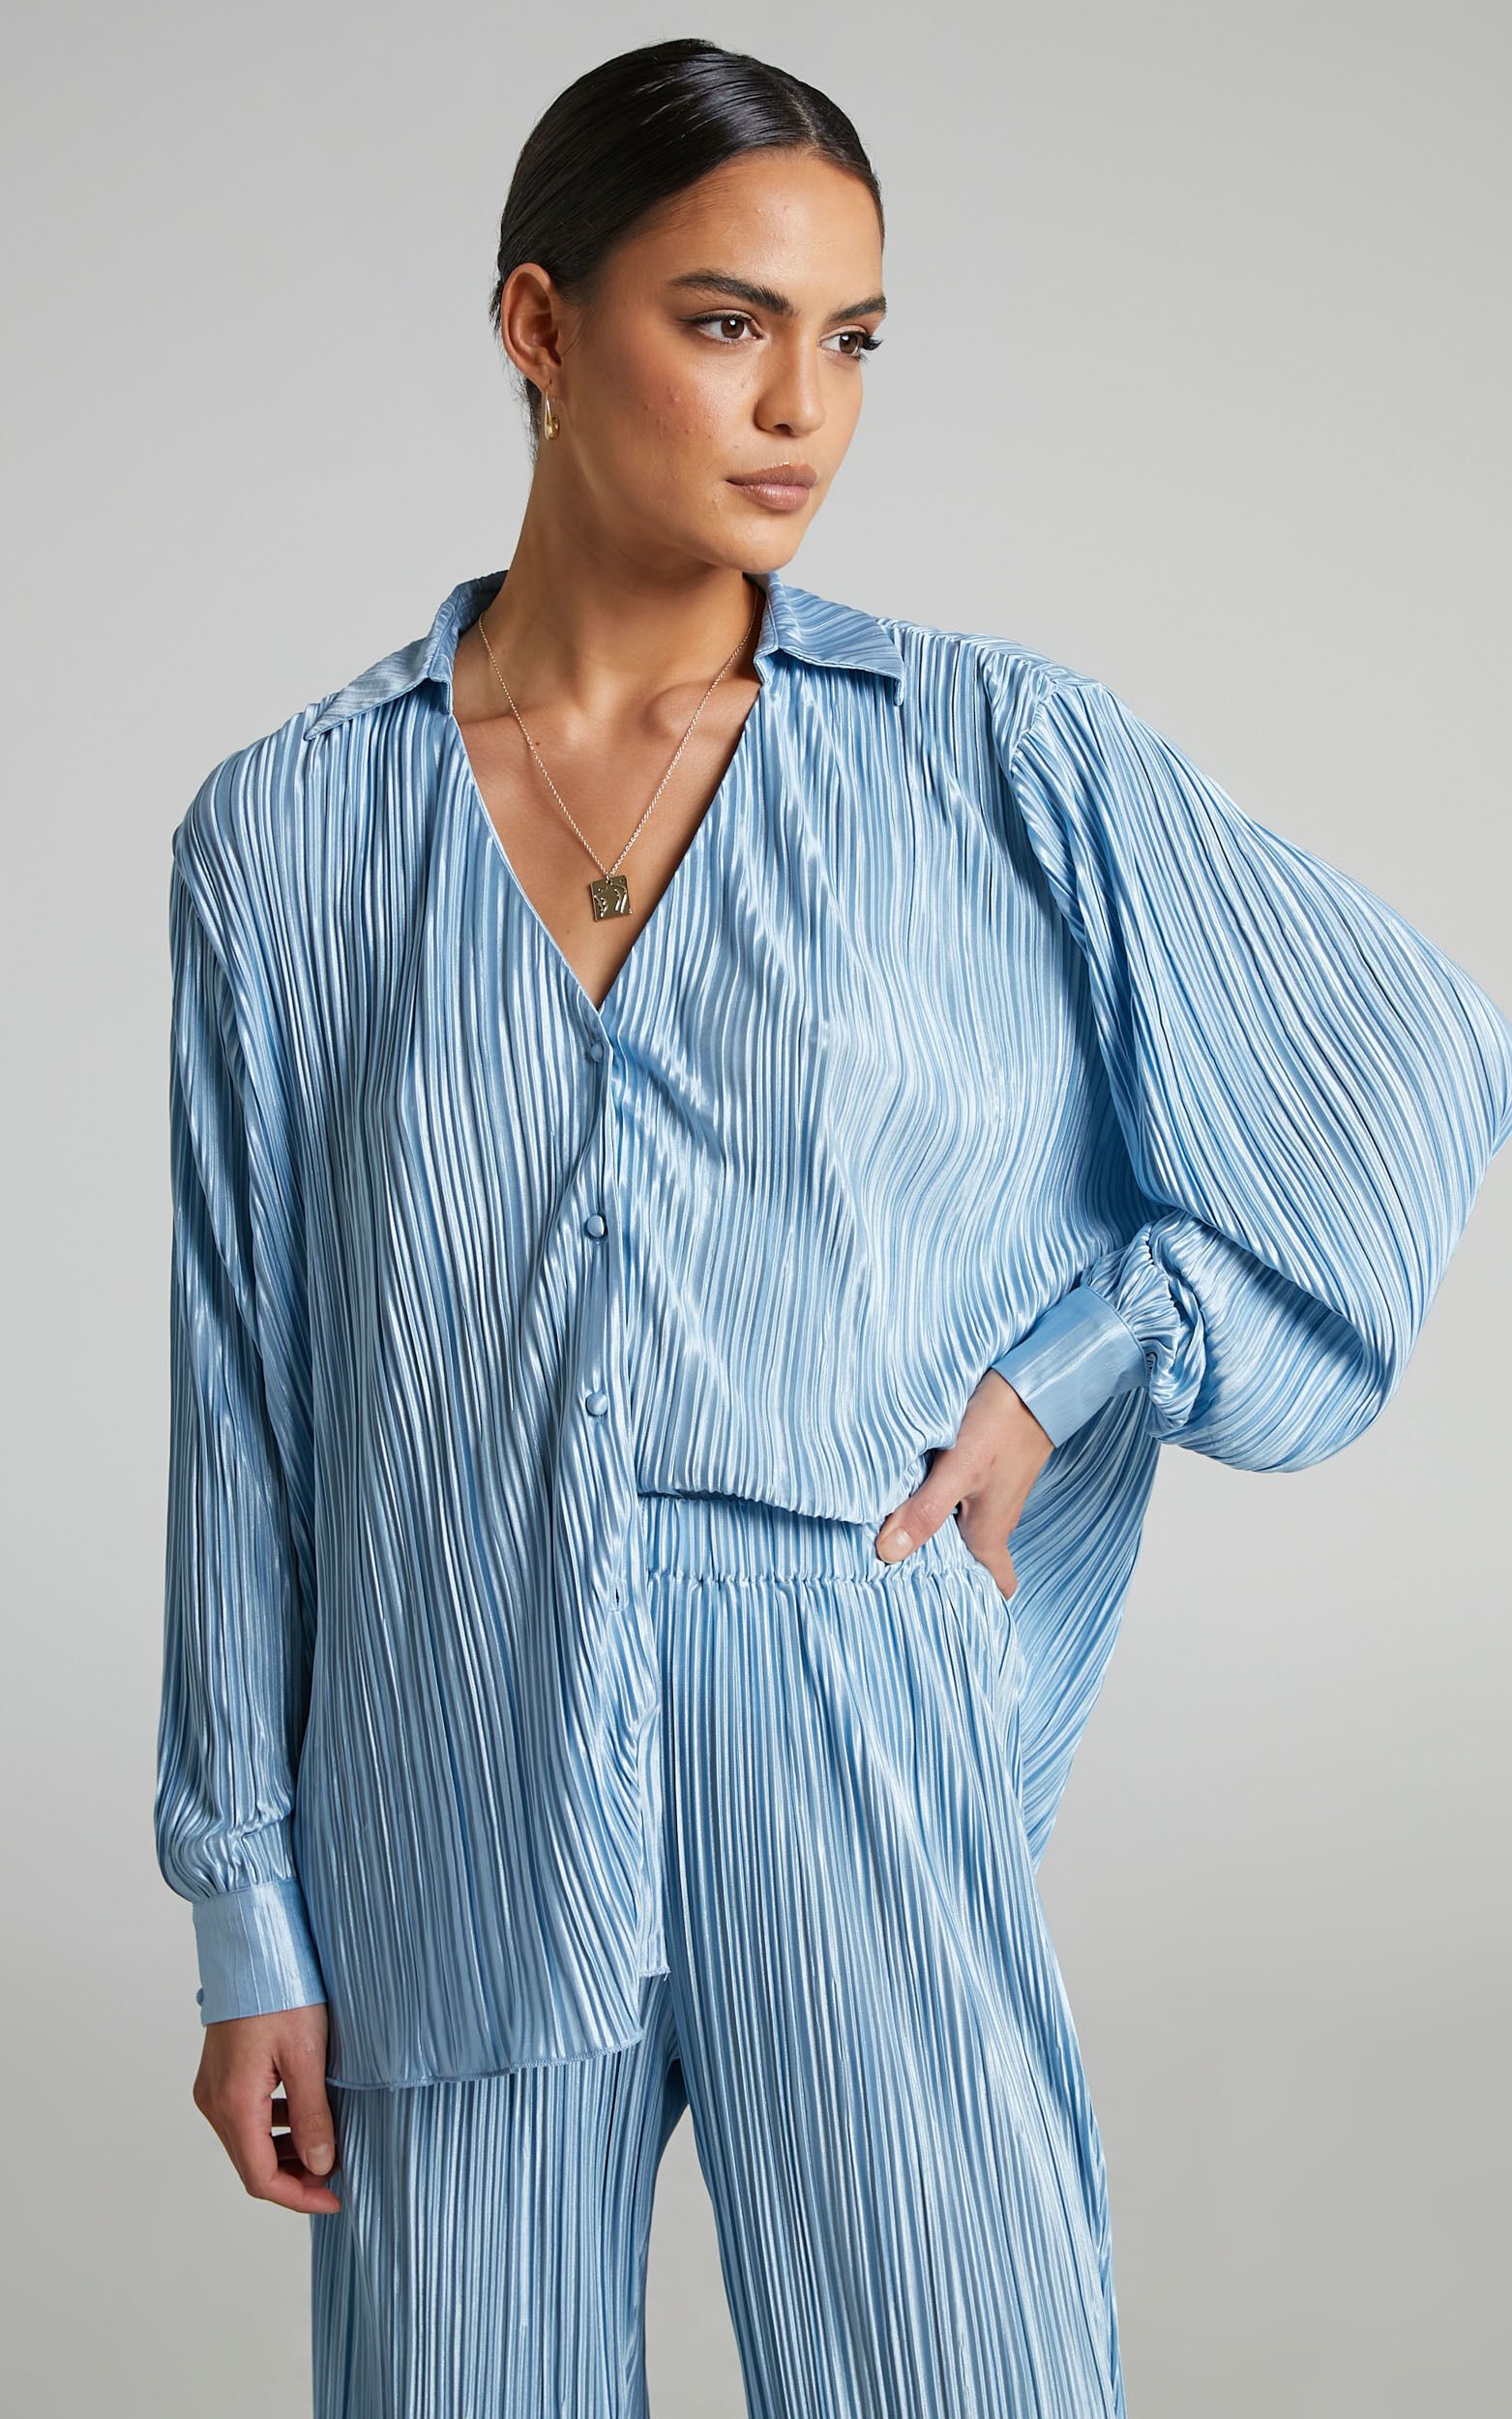 Beca Plisse Button up Shirt in Cornflower | Showpo - deactived